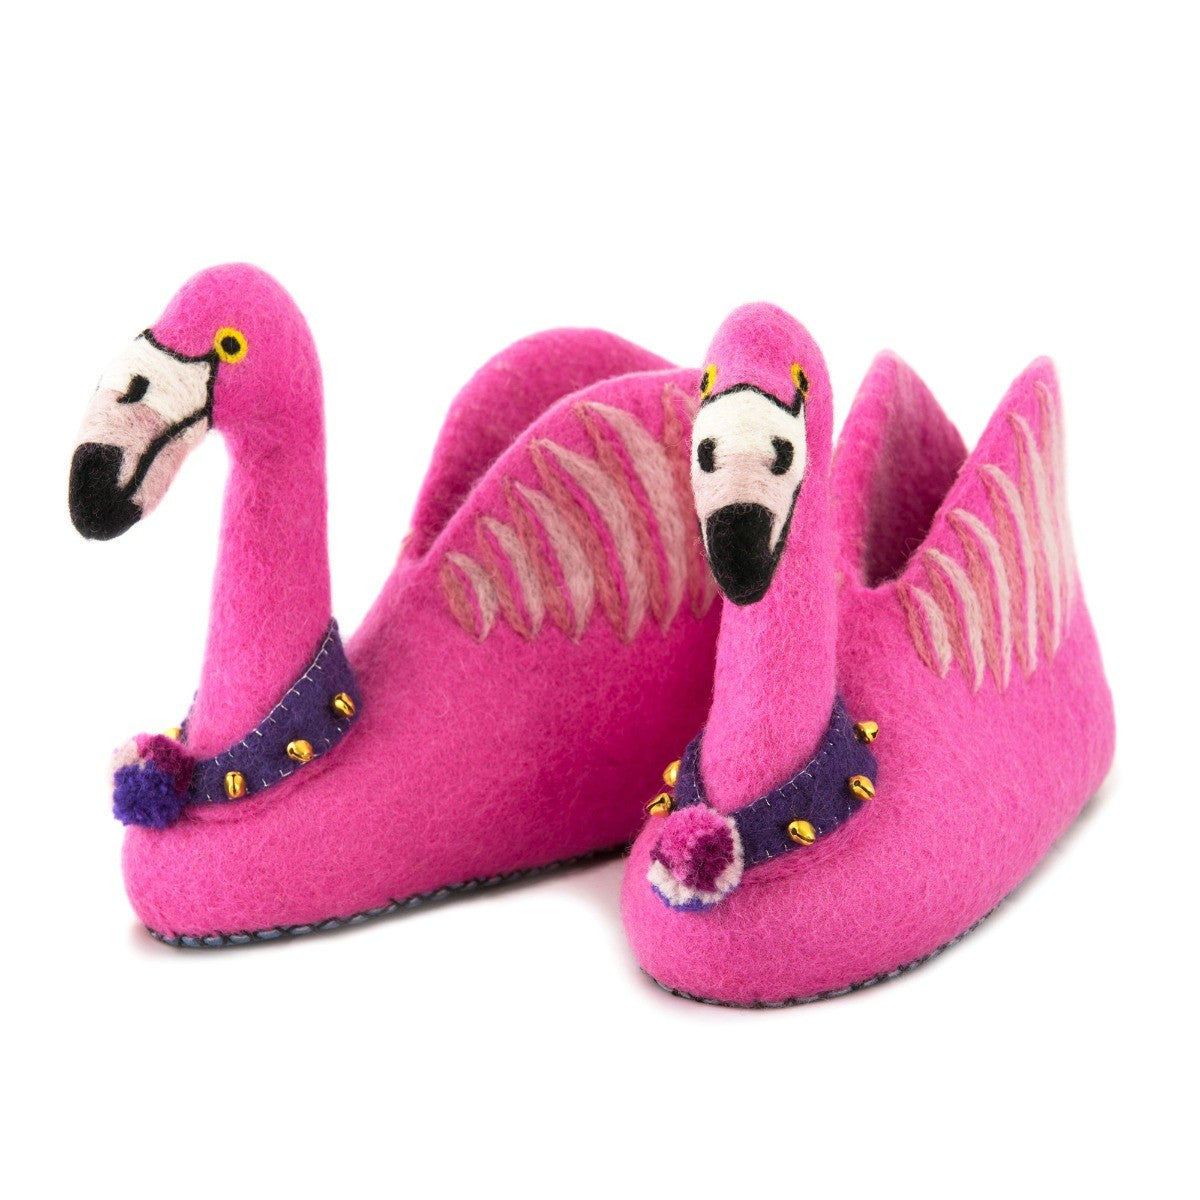 Alice the Flamingo Slippers